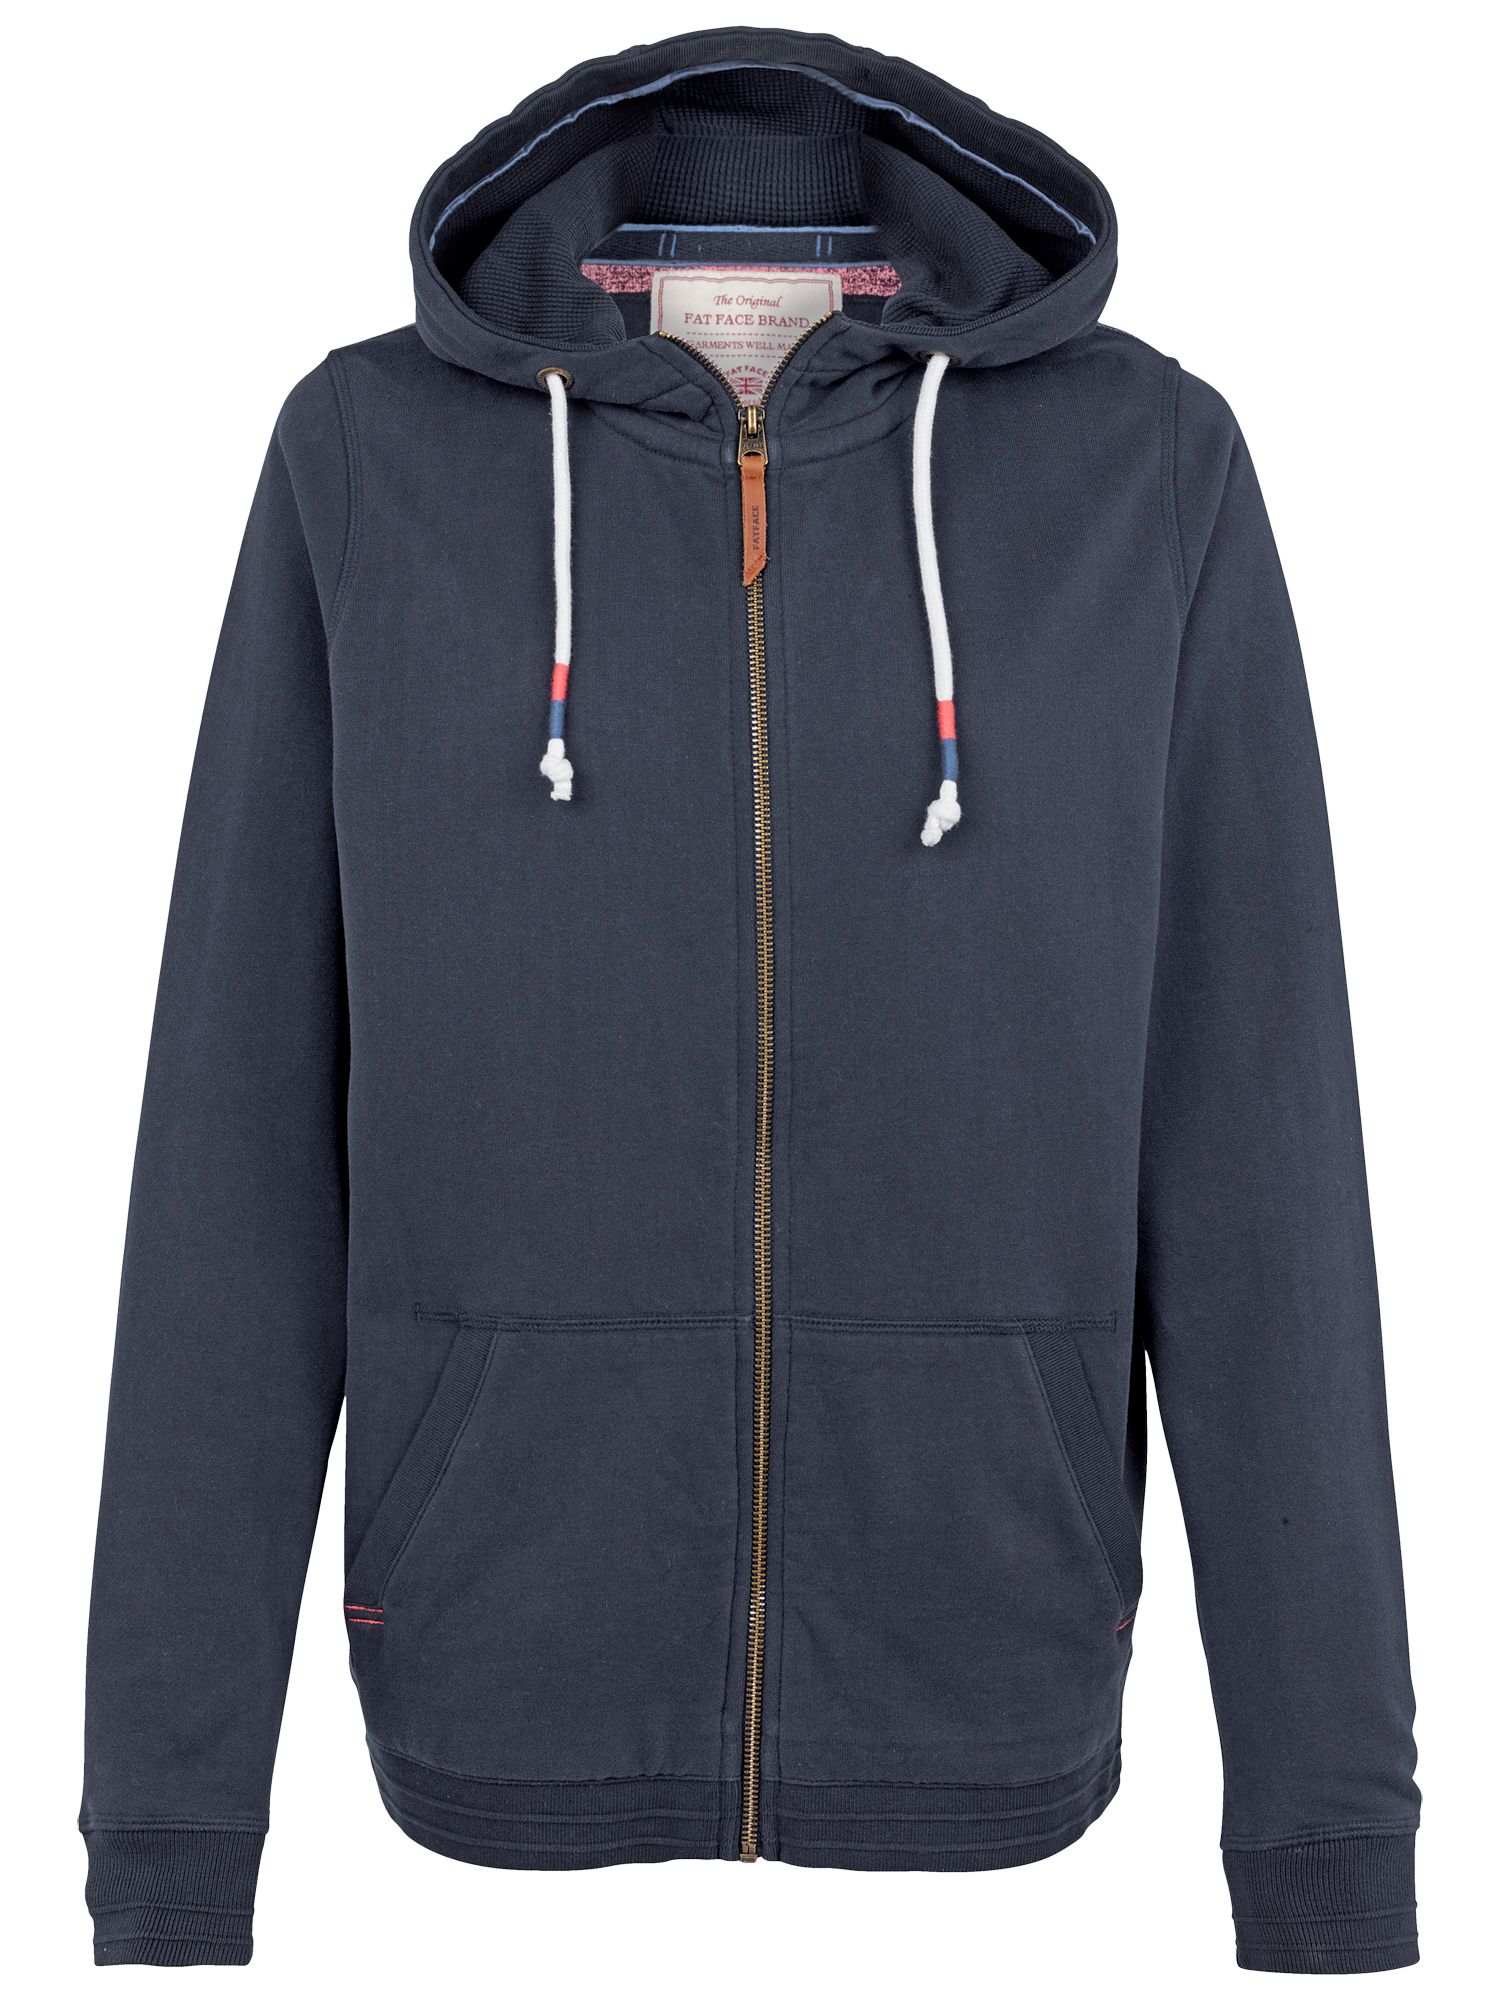 fat face zip up hoodie off 77% - online 